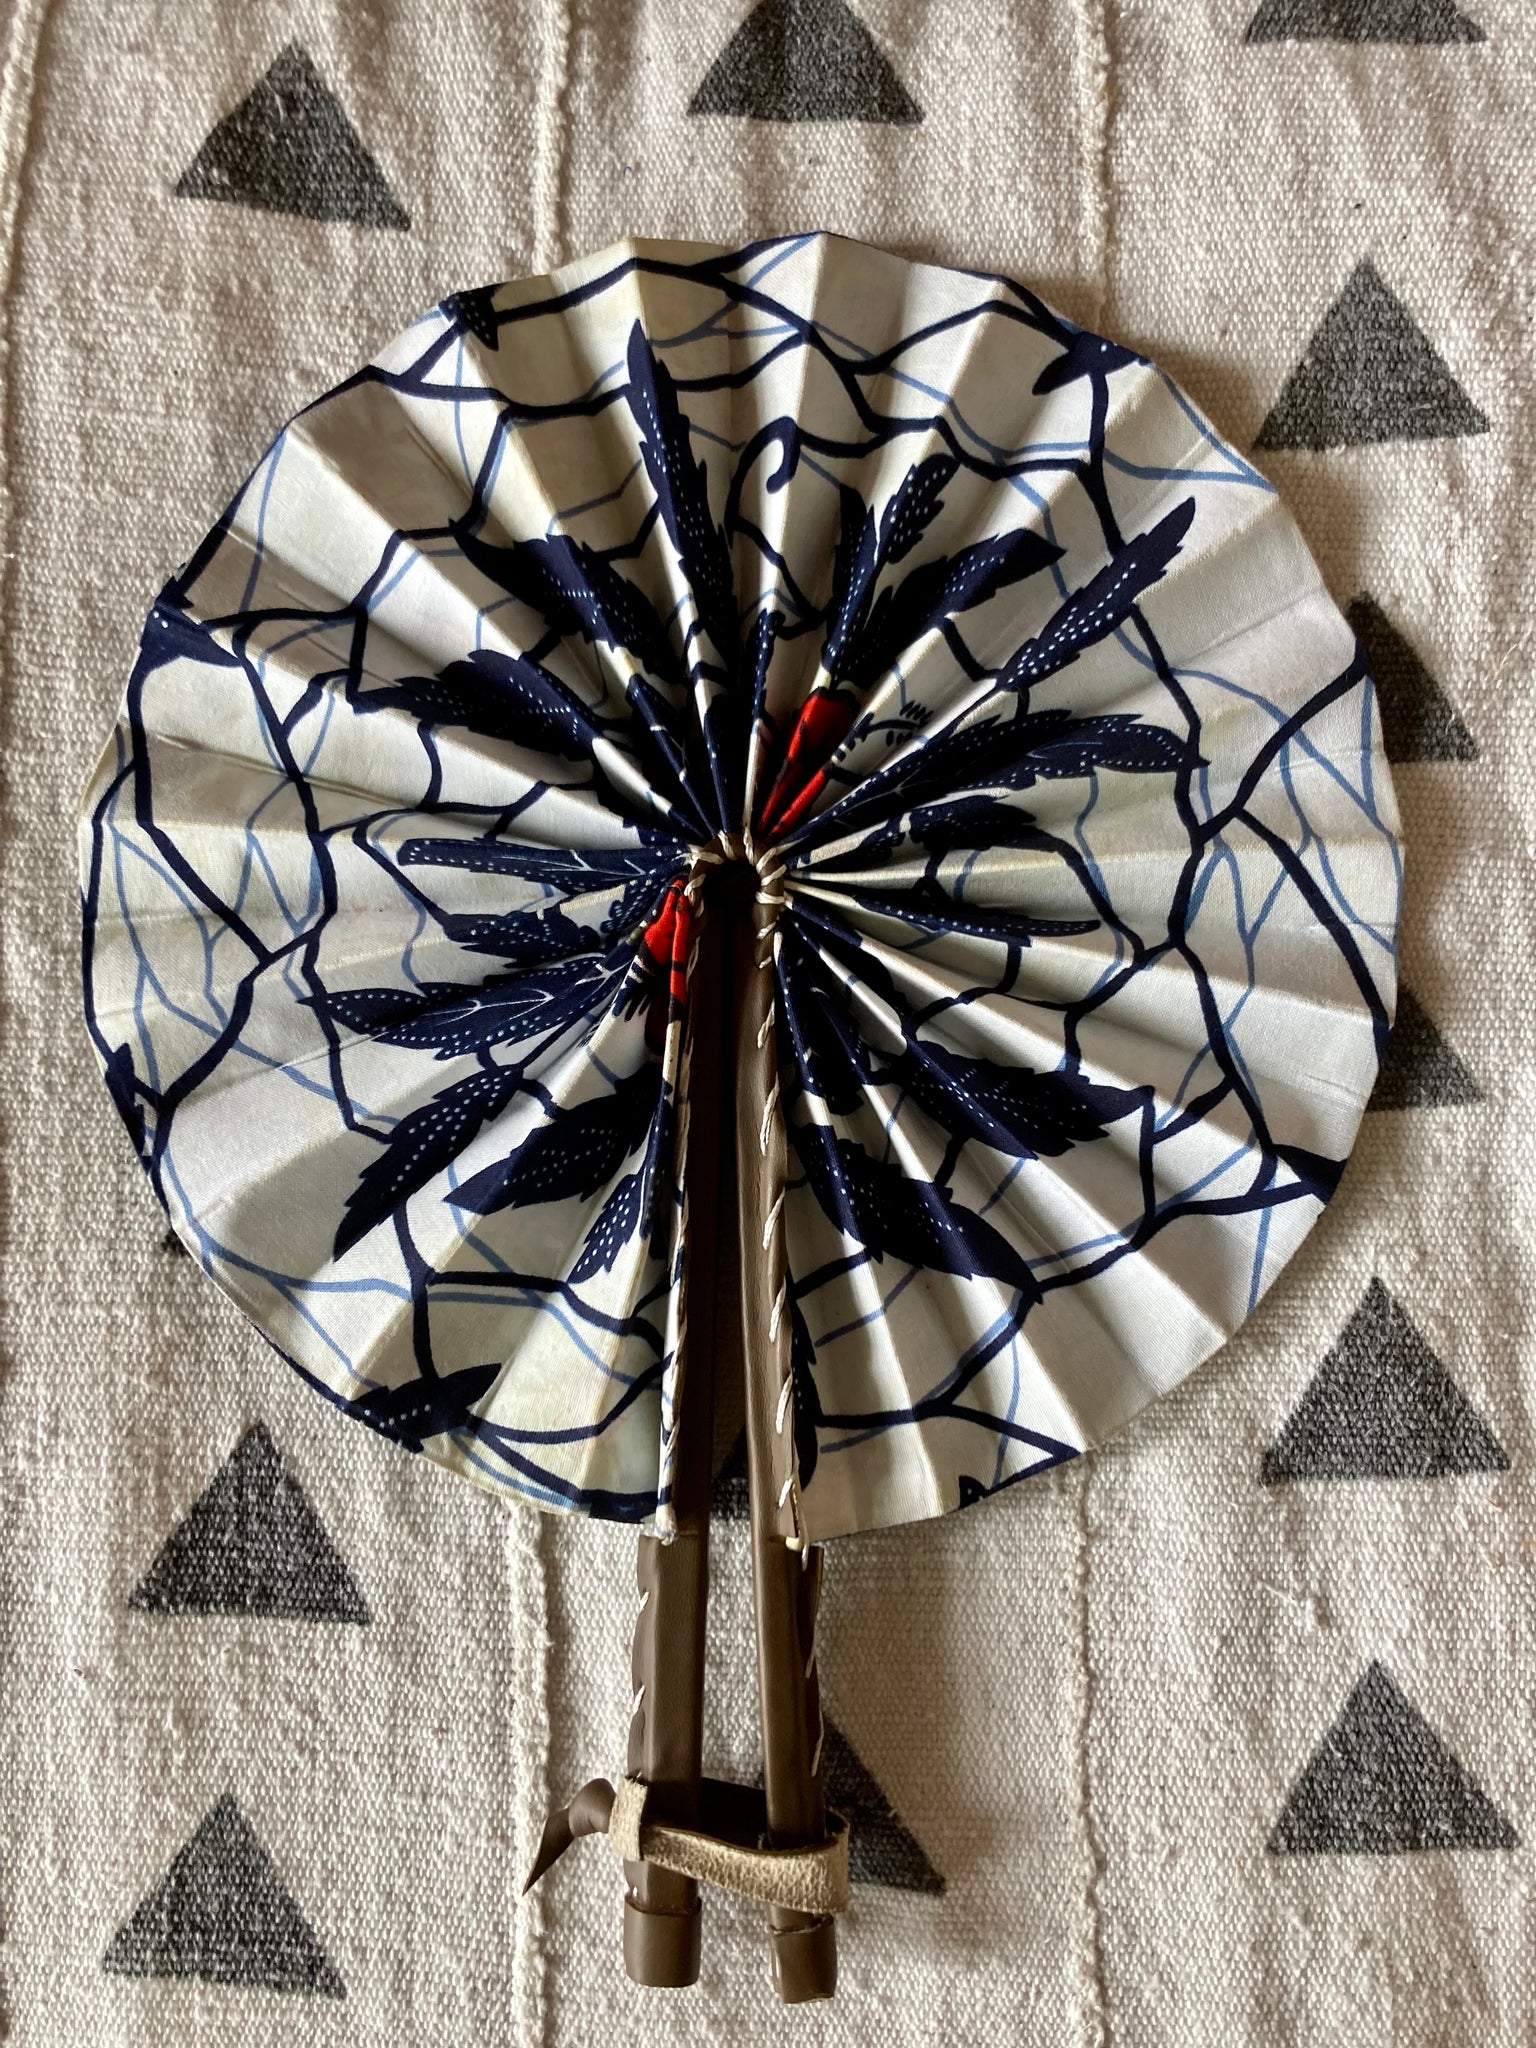 Folding Fan - Shades of Blue